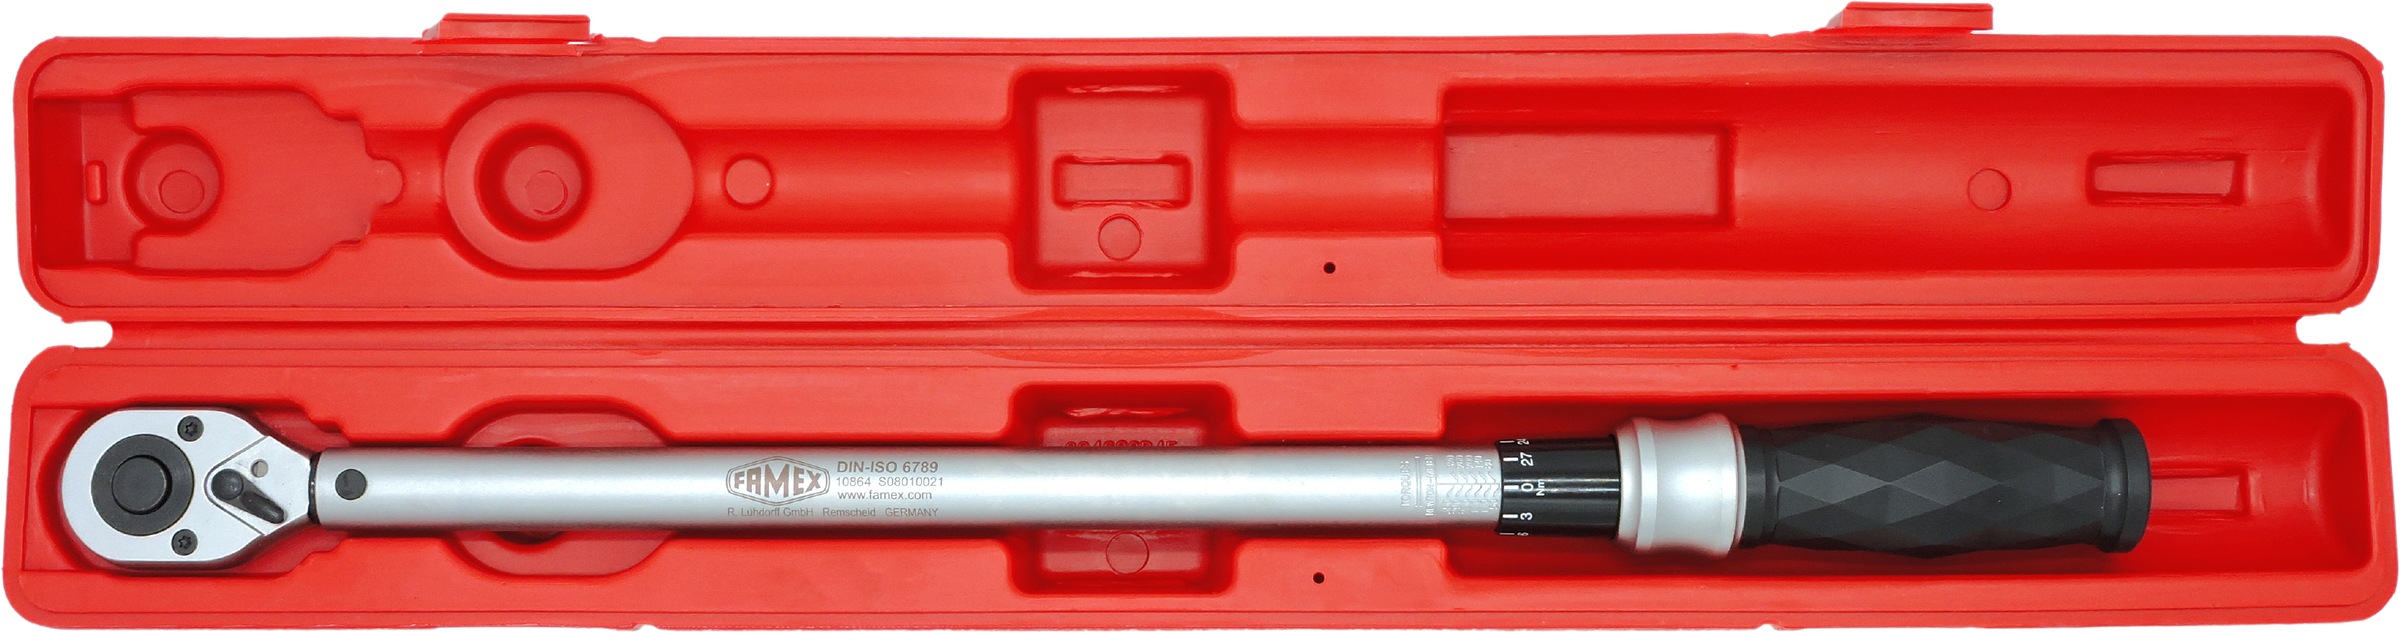 FAMEX Drehmomentschlüssel »10864 - PROFESSIONAL - R+L«, 12,5 mm (1/2-Zoll)-Antrieb, 50-350 Nm, Messung in beide Drehrichtungen